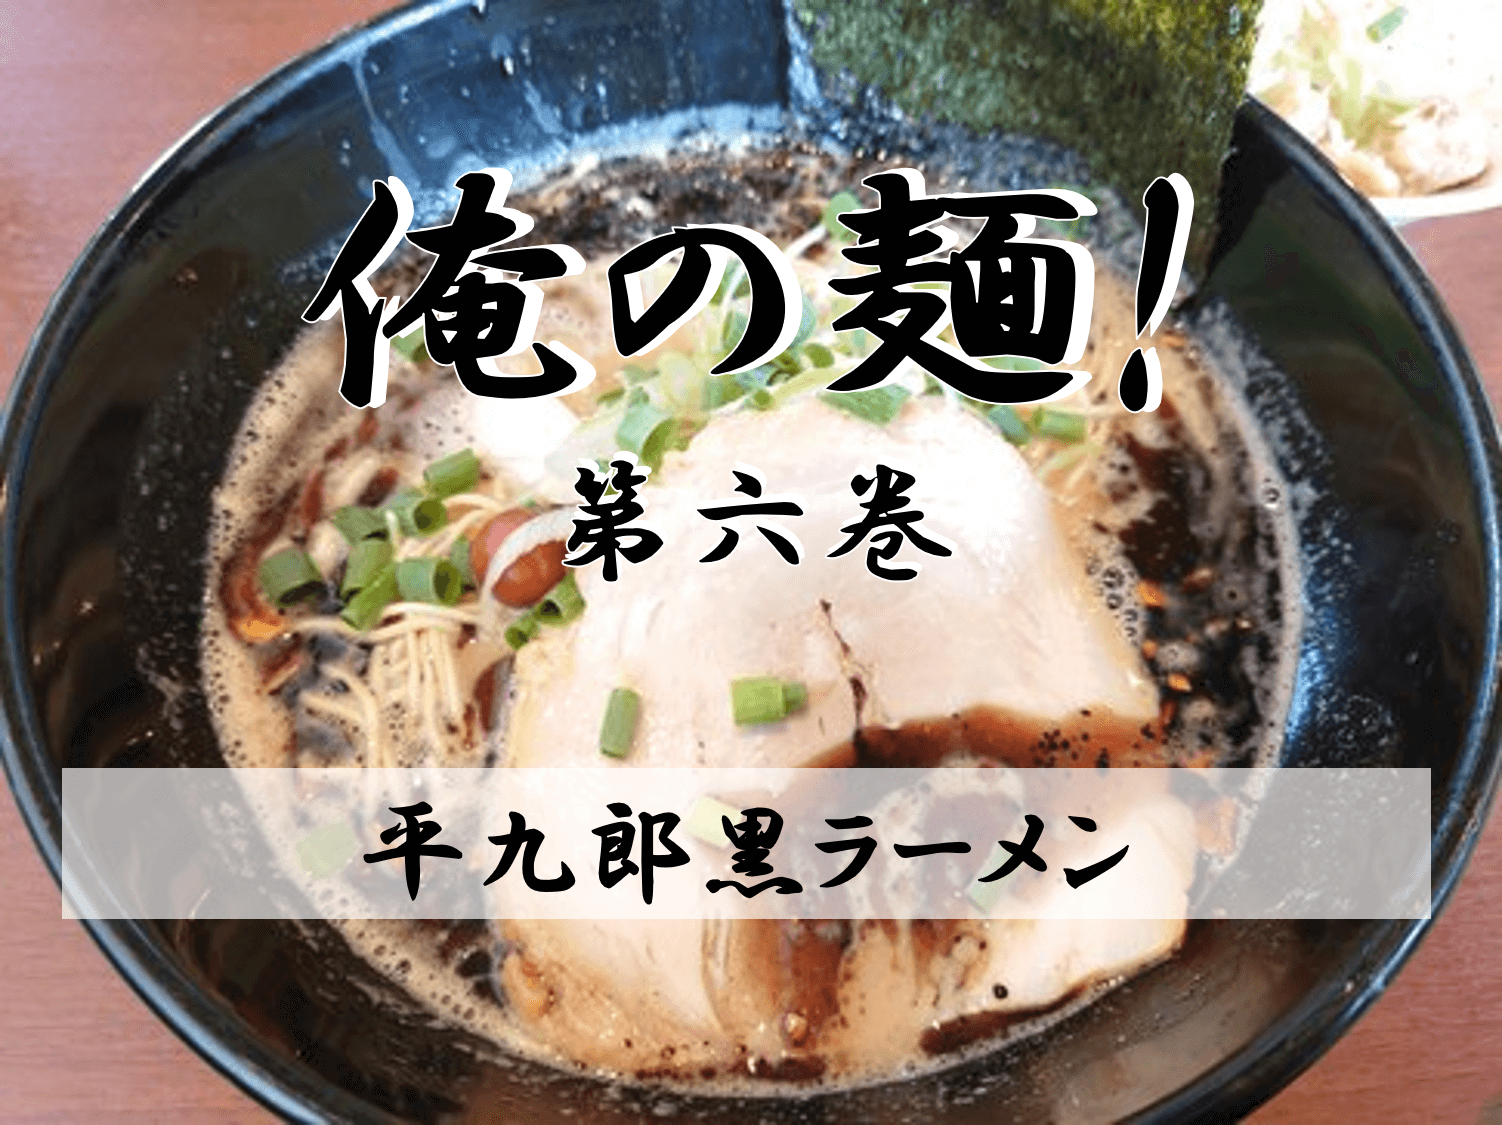 時には細麺が食べたいんだ。東大沢にある平九郎Rの巻【俺の麺】